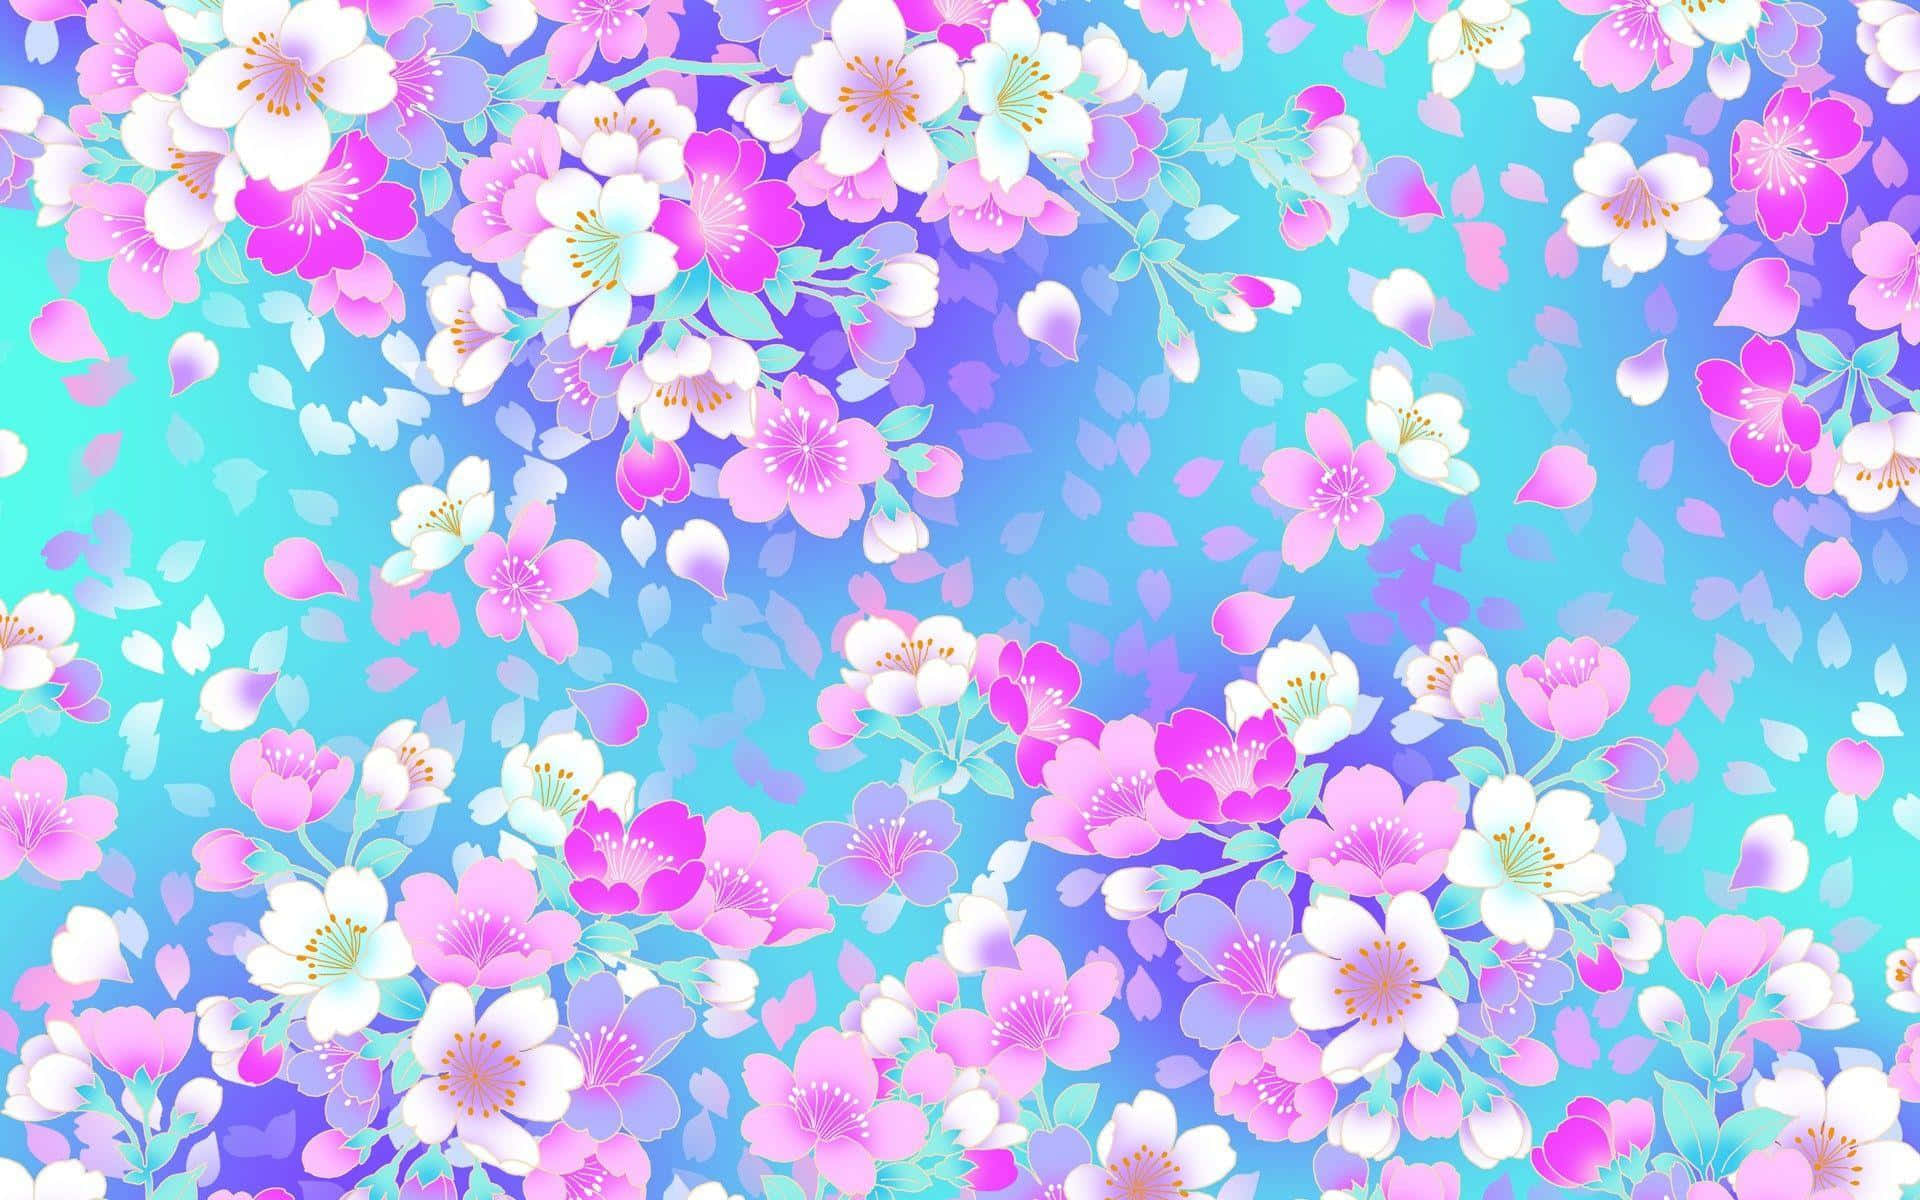 Fondode Pantalla Con Flores De Cerezo En Color Azul Y Rosa.